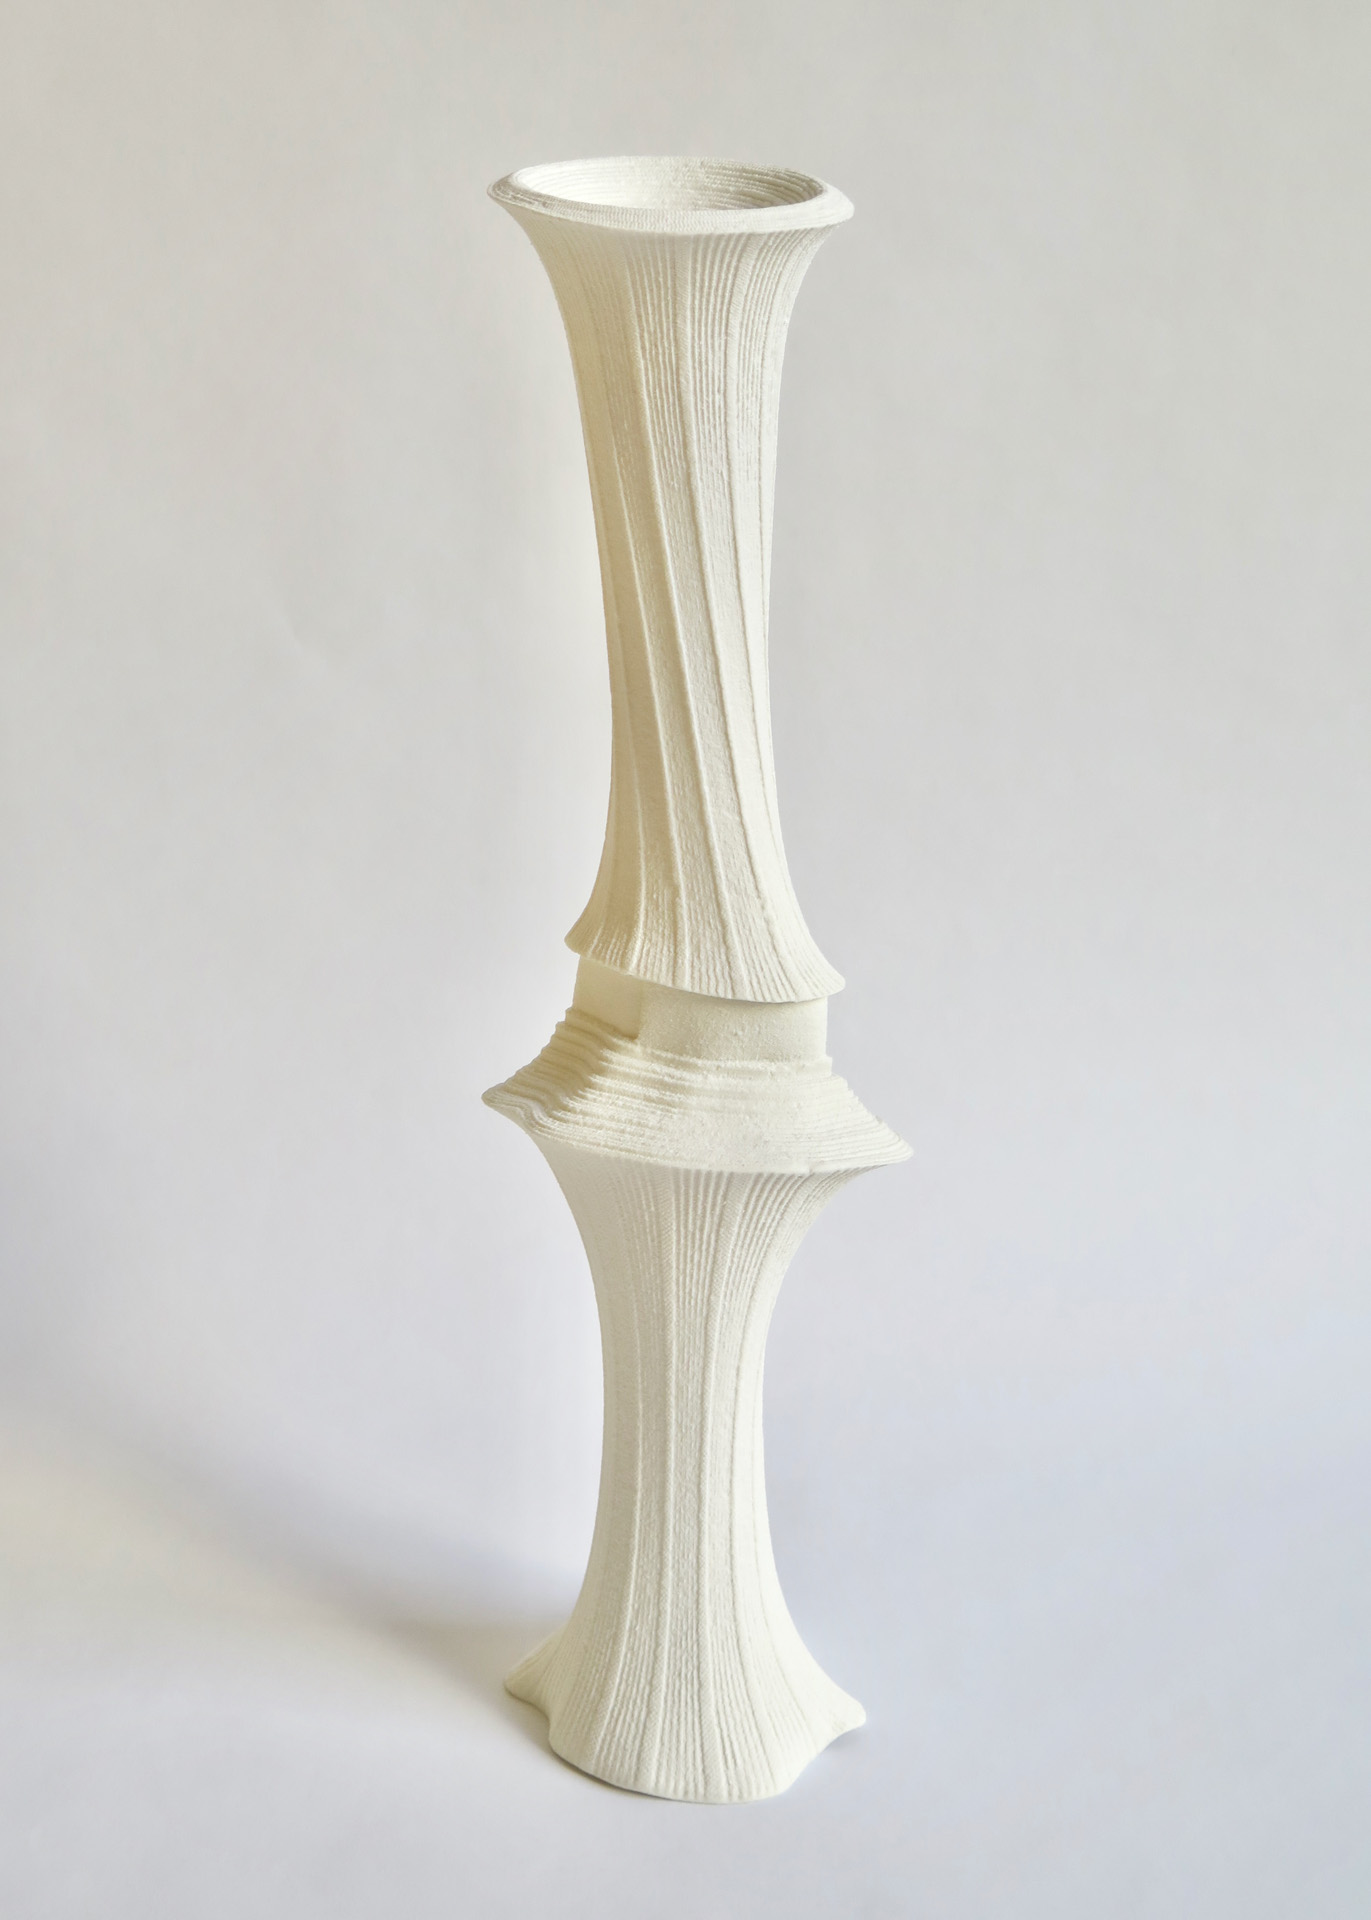 "De sève et d’os", 2020. Porcelaine, impression par coulage. Ø 11 x H. 38 cm